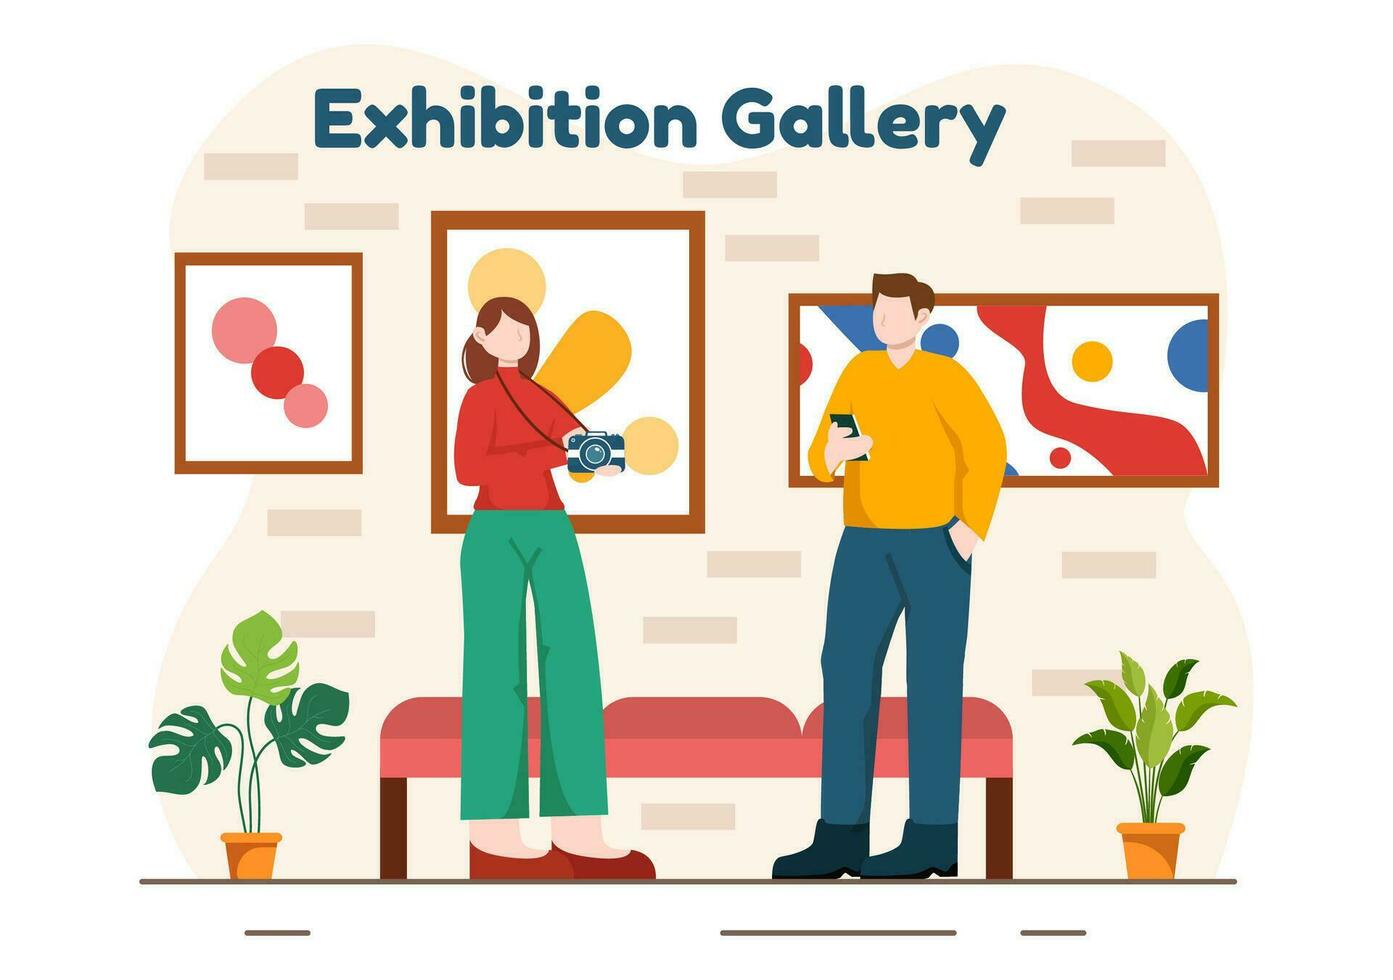 utställning besökare visning en Galleri med modern abstrakt målning på samtida i utläggning hall i platt tecknad serie bakgrund vektor illustration